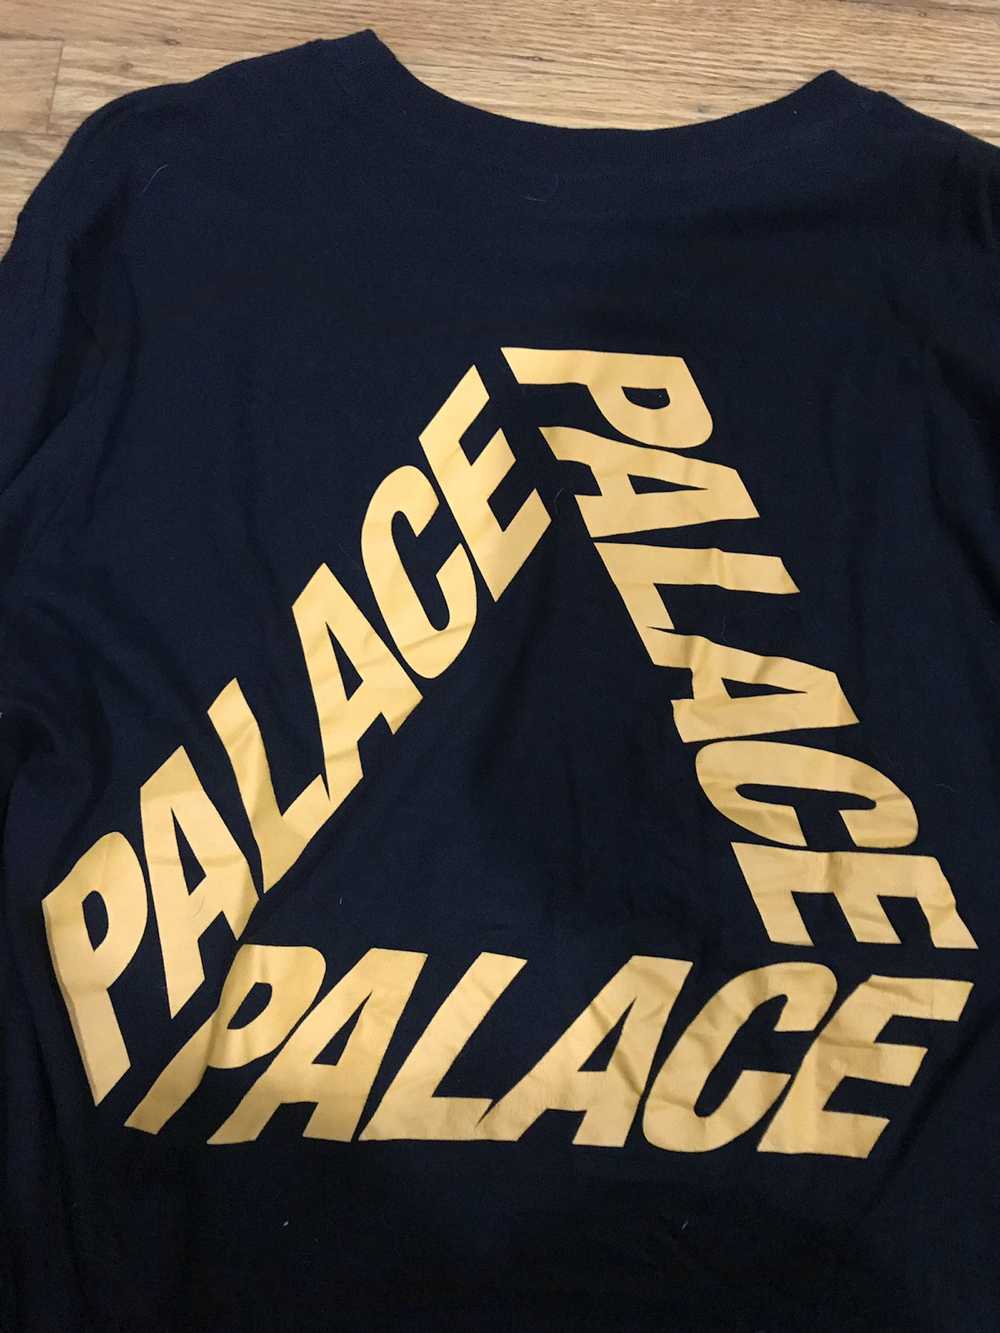 Palace Palace Tri-Ferg Longsleeve T-Shirt Size M - image 5